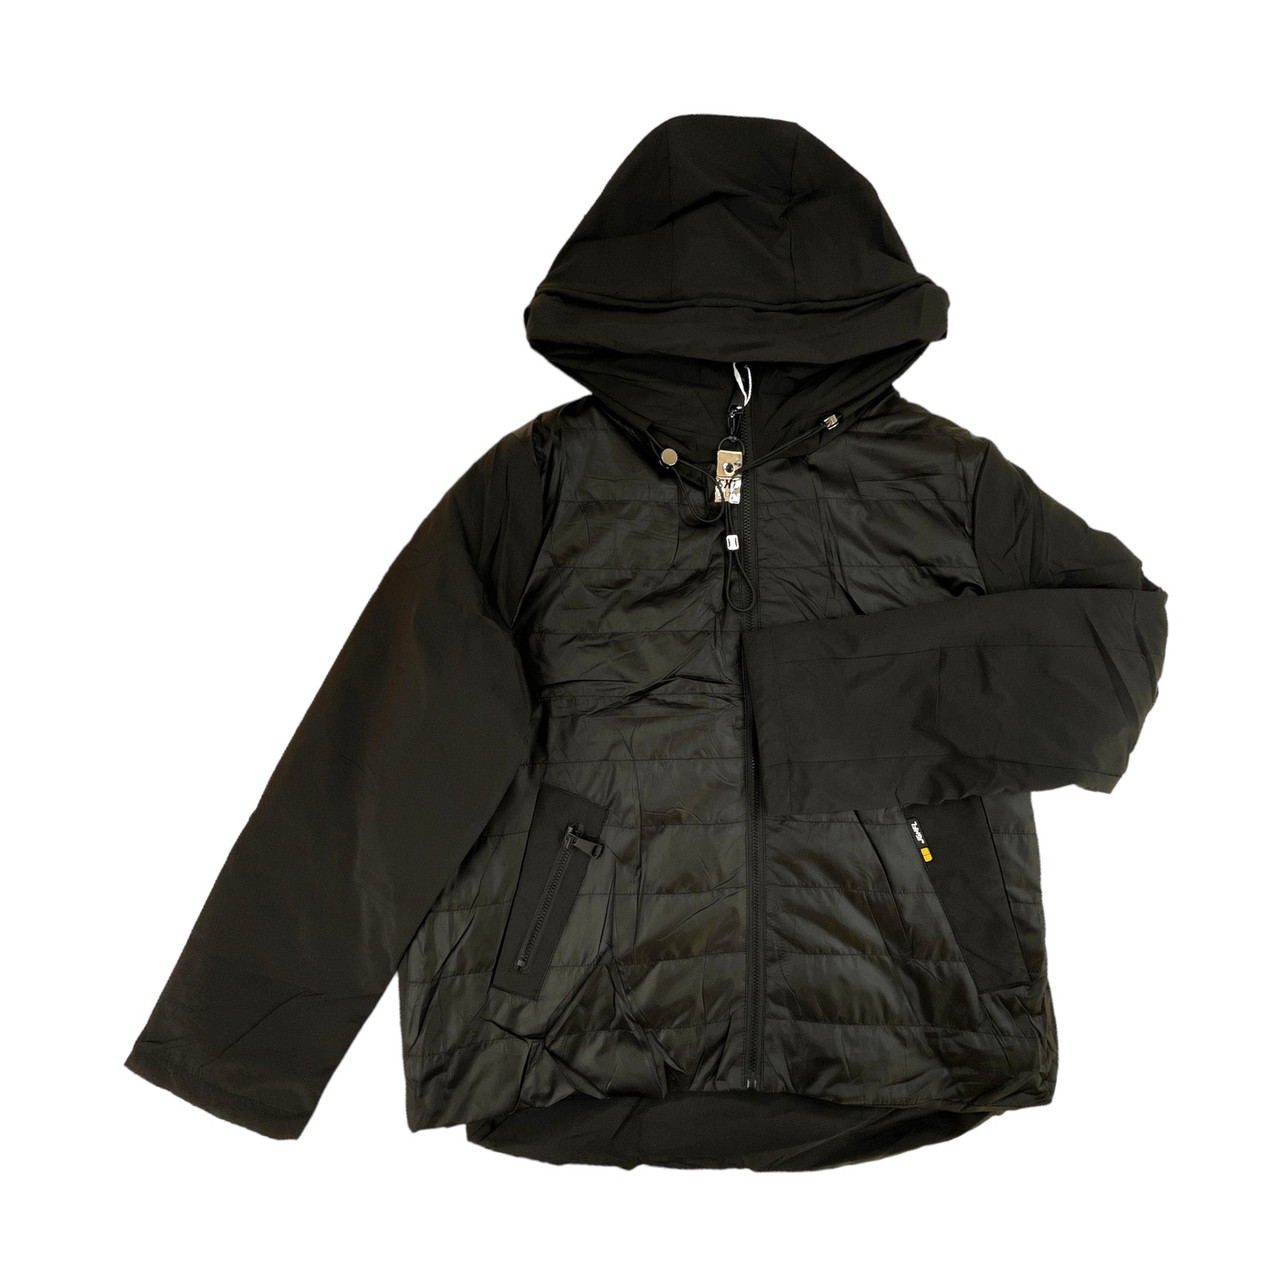 Жіноча осінка куртка чорна, тепла з капюшоном, No 3057, ( р. S-2XL)